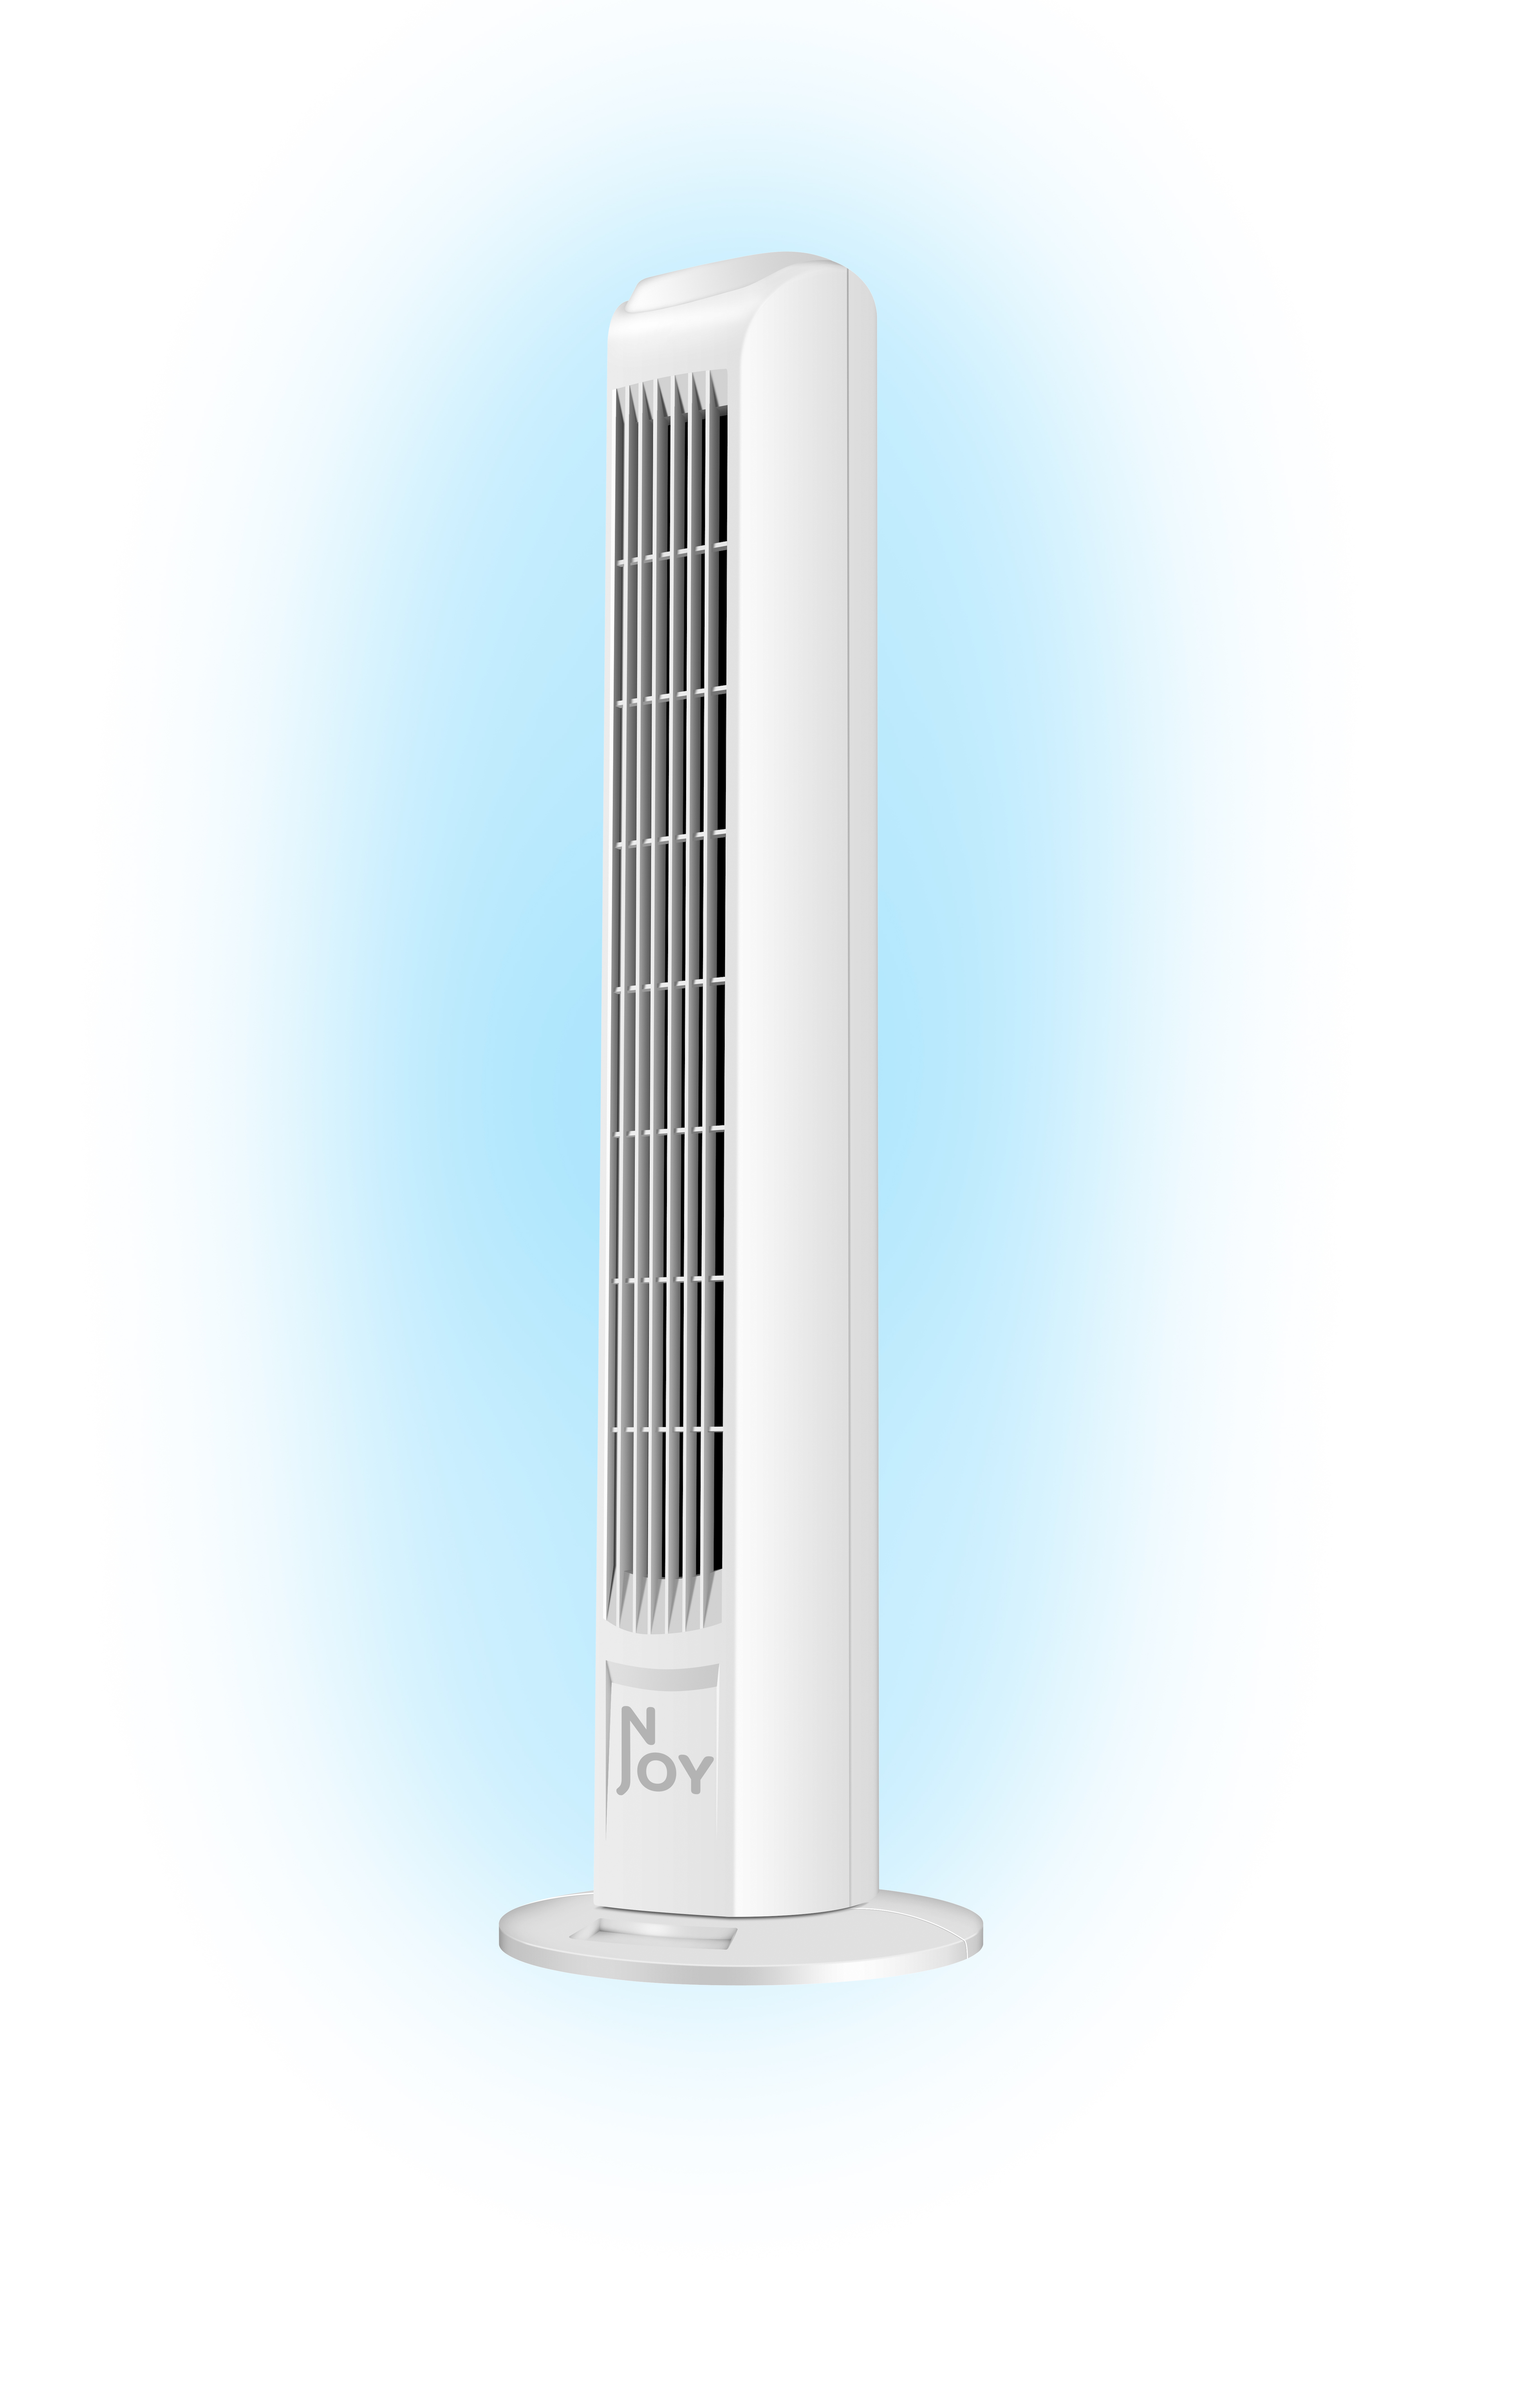 - Superkuehlung - - Geschwindigkeiten Weiss - Turm Weiß - - Ventilator - NJOY Turm Turmventilator Sicher 3 50W